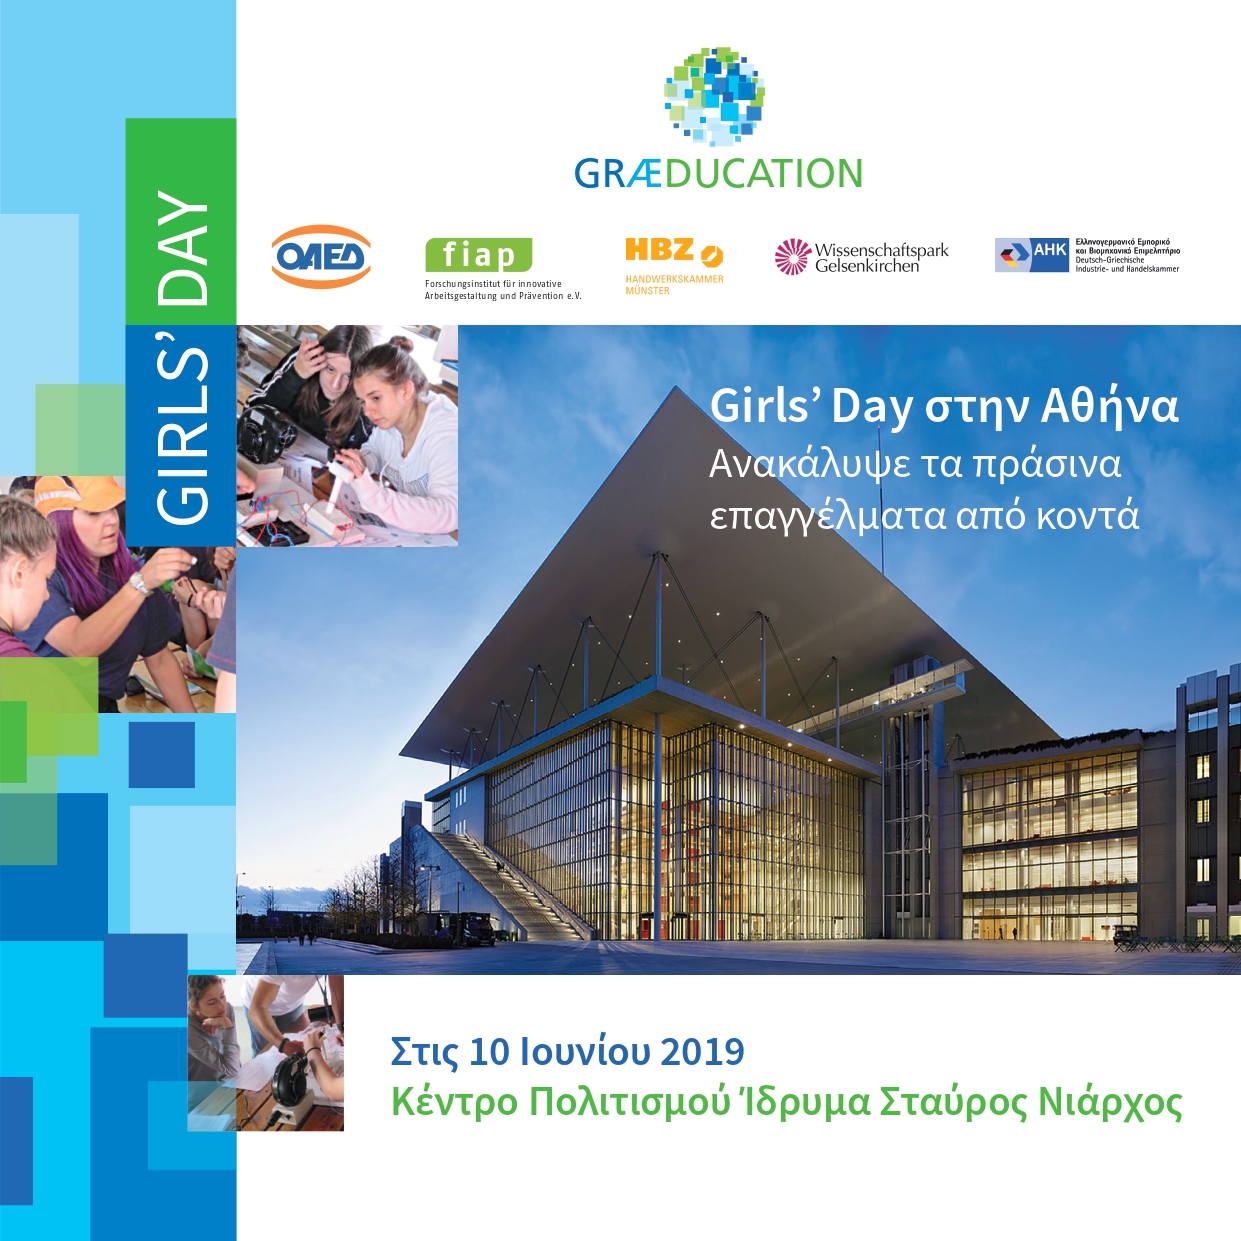 «GIRLS’DAY: Ανακάλυψε τα πράσινα επαγγέλματα από κοντά» 10 Ιουνίου 2019 – Κέντρο Πολιτισμού  Ίδρυμα  Σταύρος Νιάρχος (ΚΠΙΣΝ)